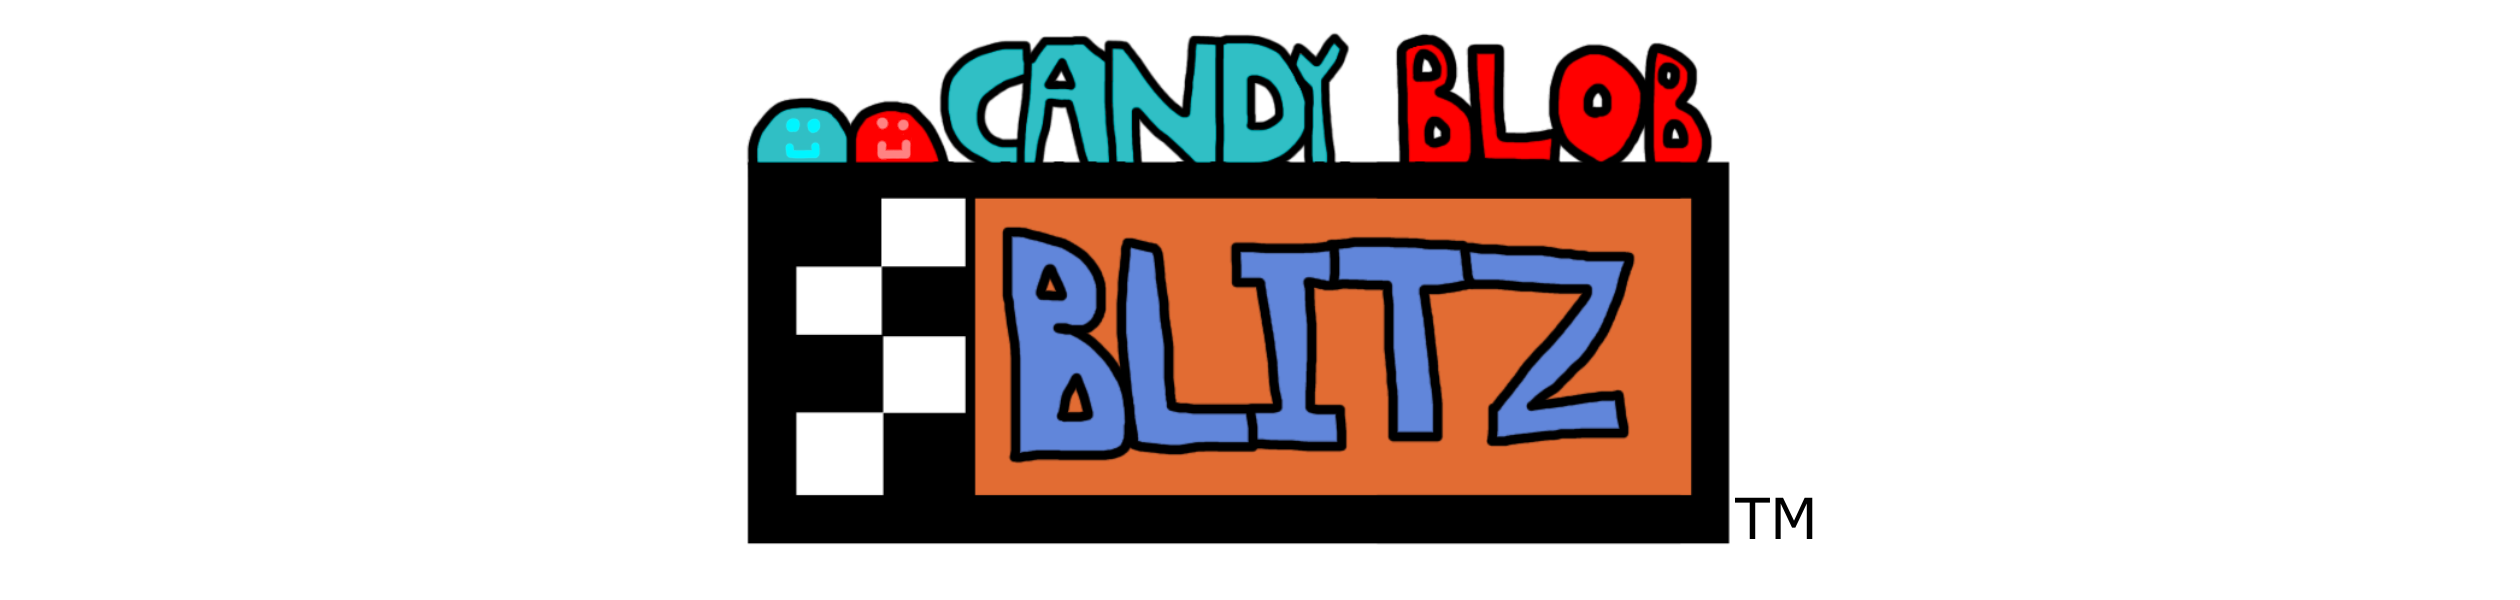 Candy Blob Blitz